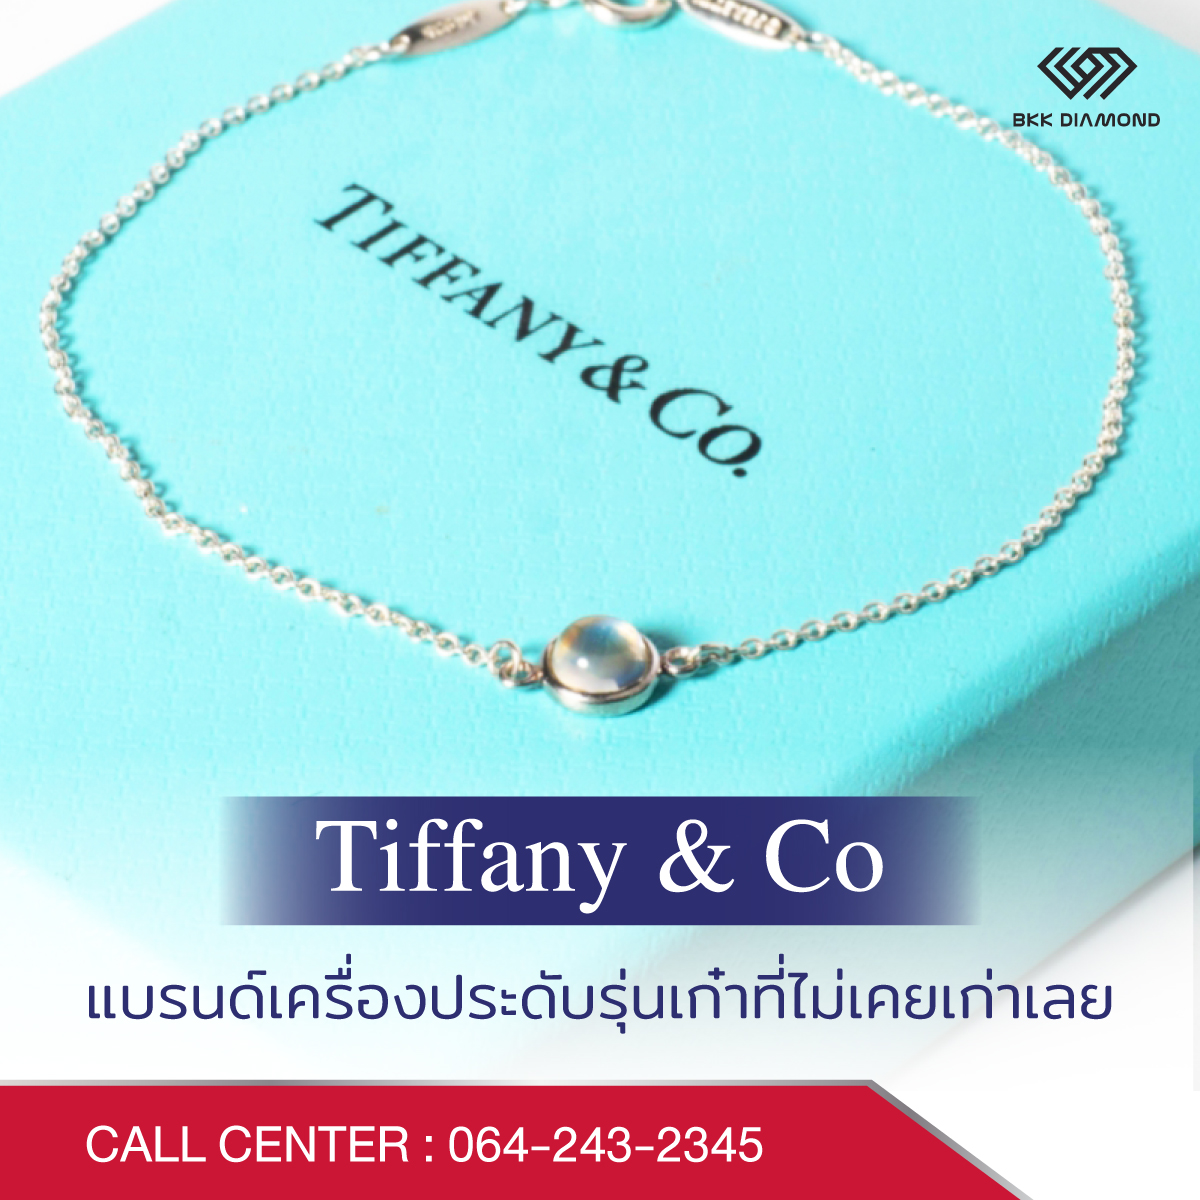 Tiffany & Co แบรนด์เครื่องประดับรุ่นเก๋าที่ไม่เคยเก่าเลย